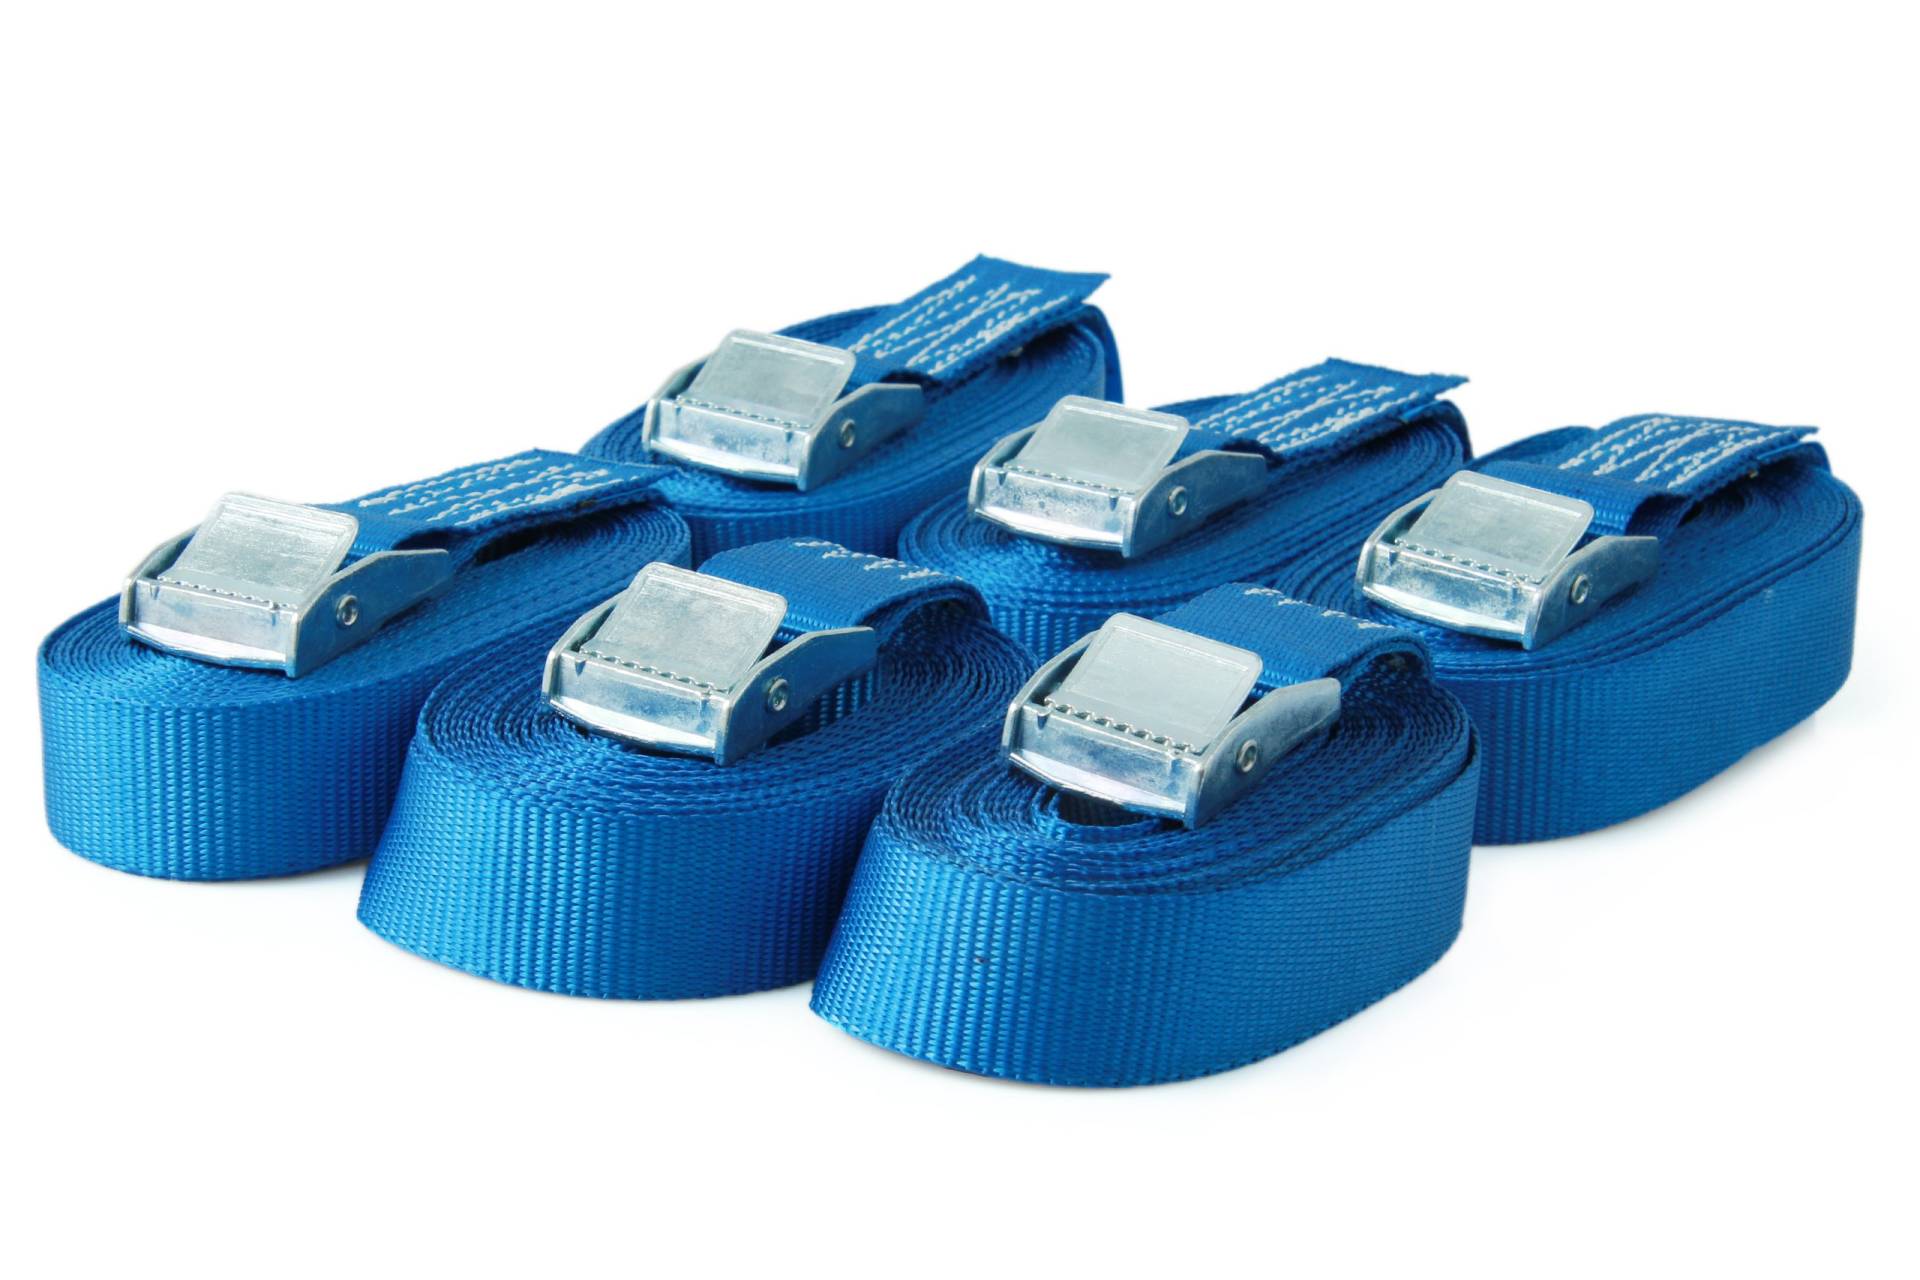 Sandax 6er-Set Spanngurte mit Klemmschloss, Länge 3m, Breite 25mm, Farbe blau, Zurrgurte mit Klemmverschluss, belastbar bis 250kg, nach DIN EN 12195-2, Einteilige hochwertige Klemmschlossgurte von Sandax